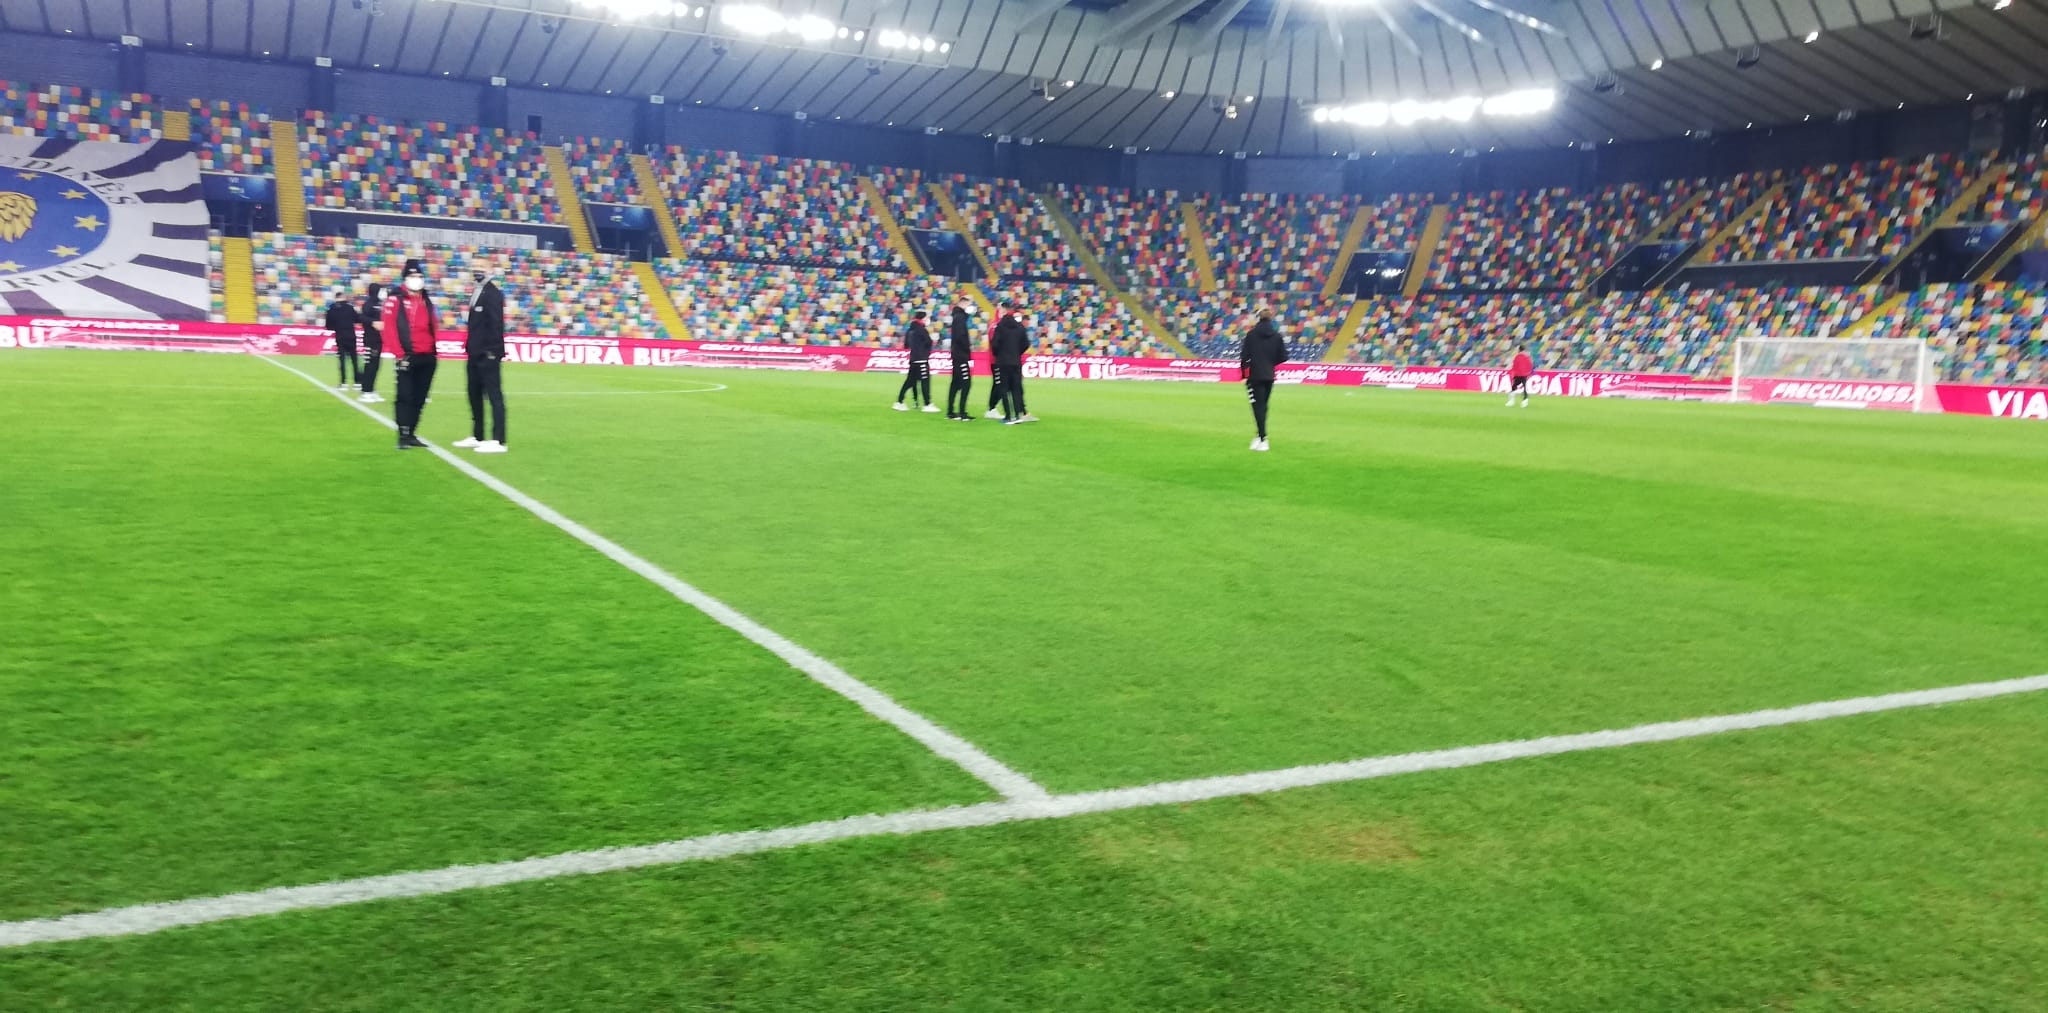 Udinese-Benevento: 0-2. Caprari ispirato, Letizia esplosivo. La Strega regala un altro colpaccio sotto l’Albero